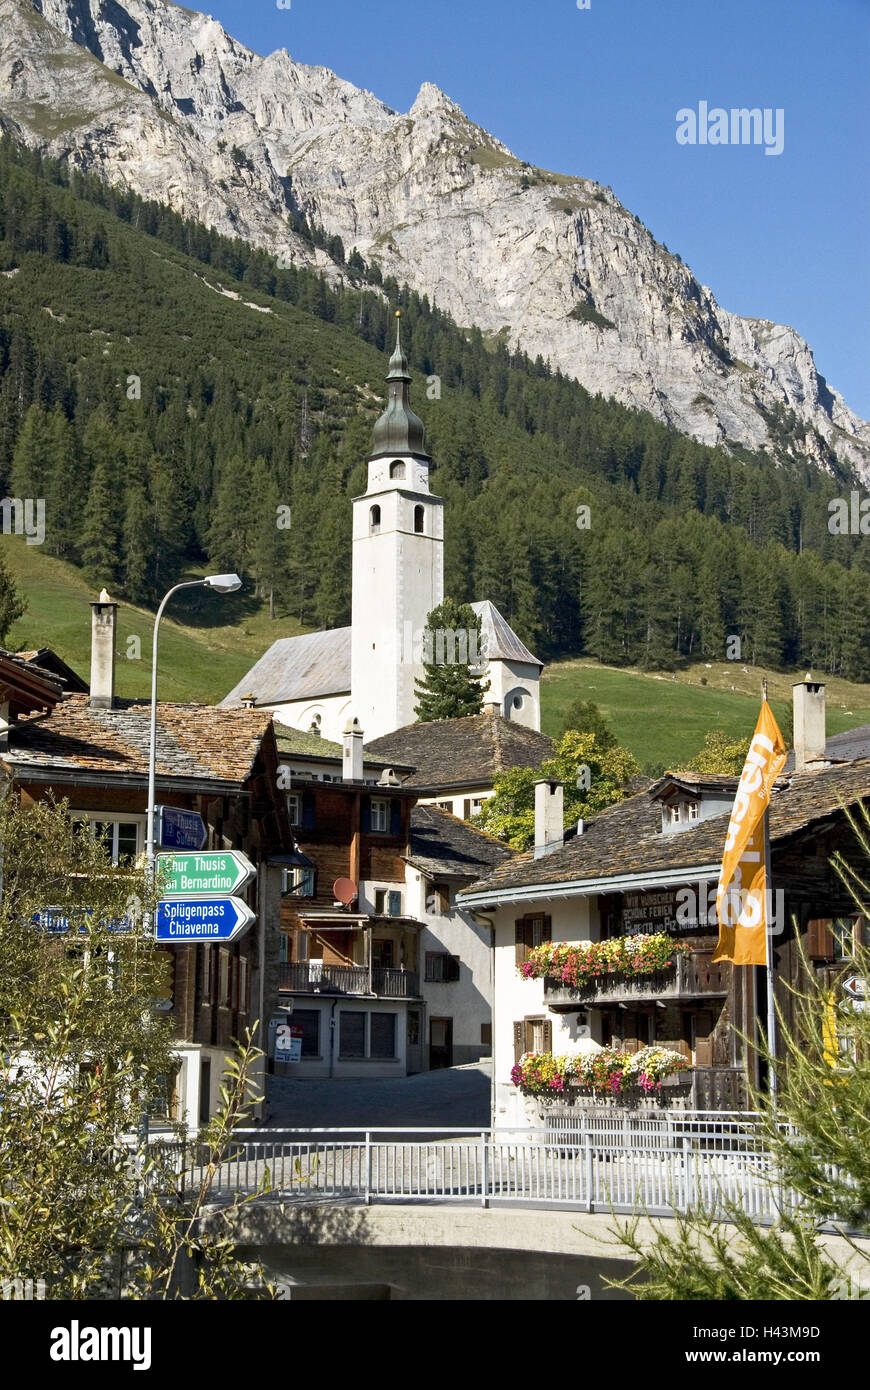 Switzerland, Graubuenden, Splügen, town view, church, mountains, wood, Stock Photo